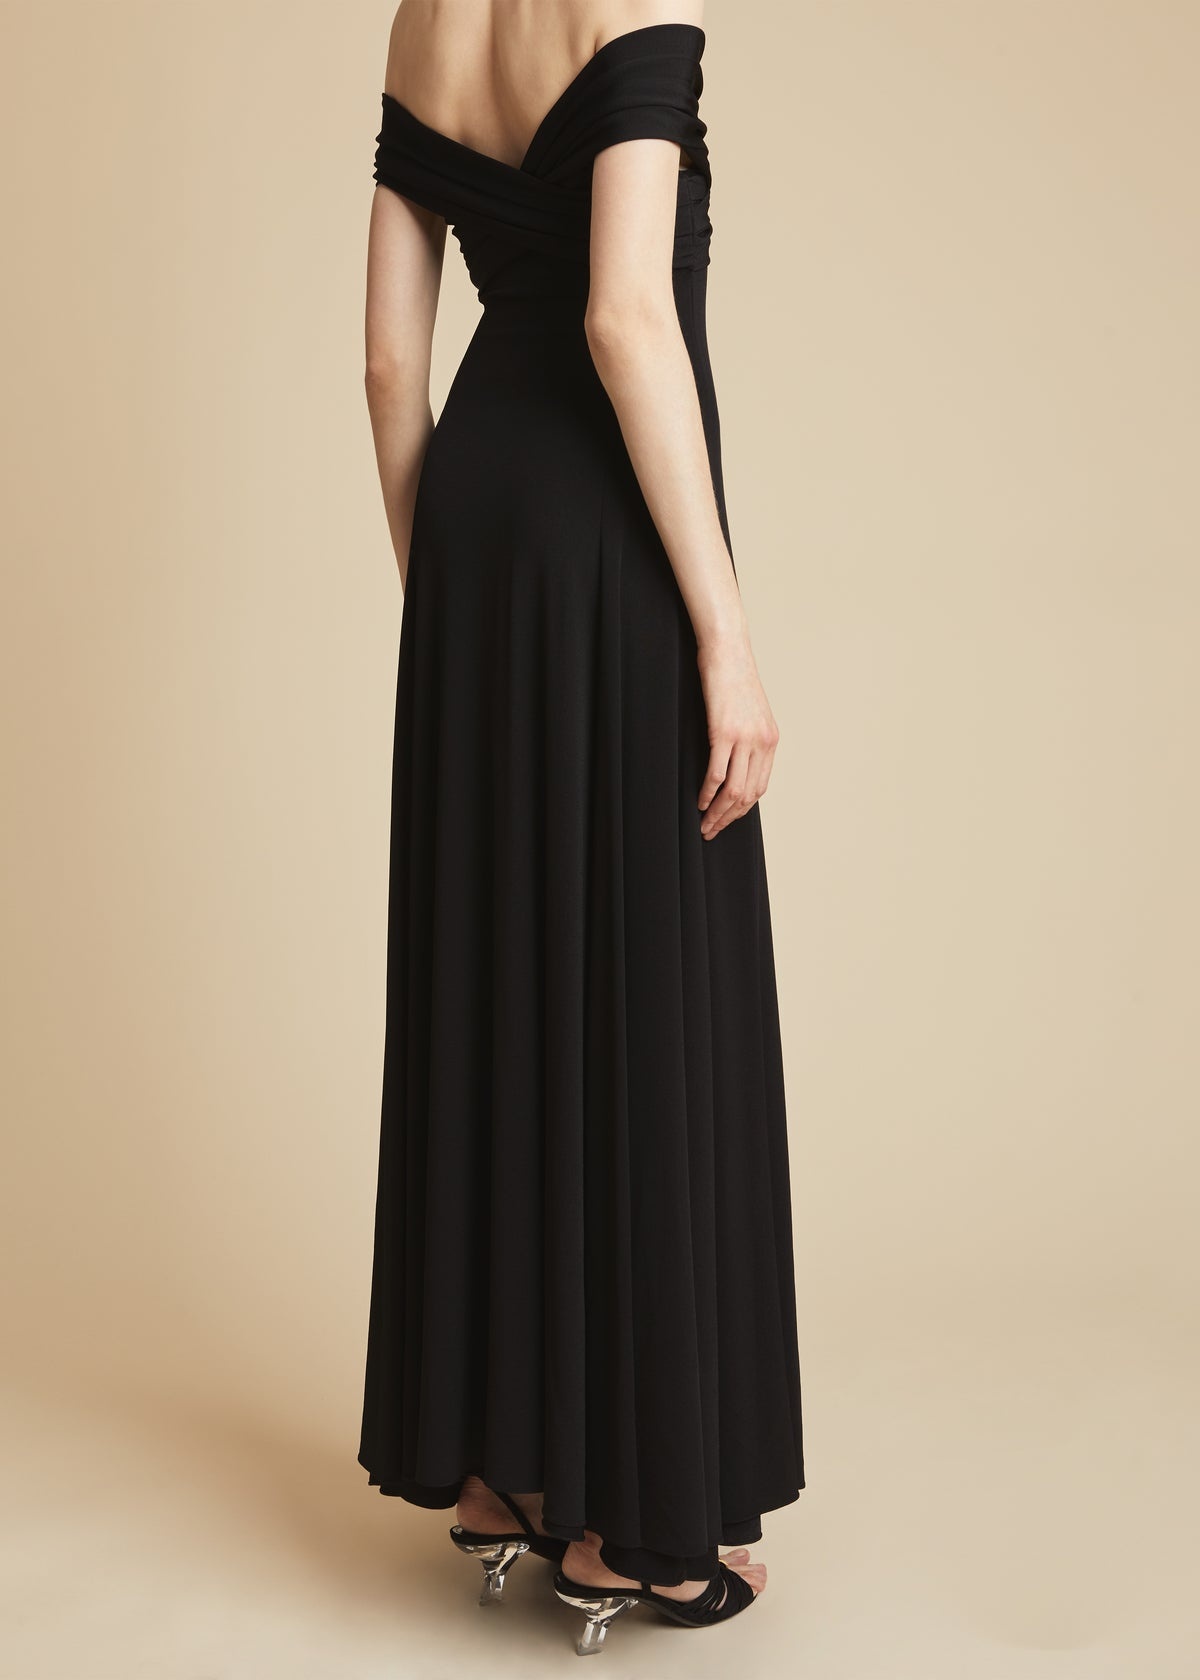 The Bruna Dress in Black - 4